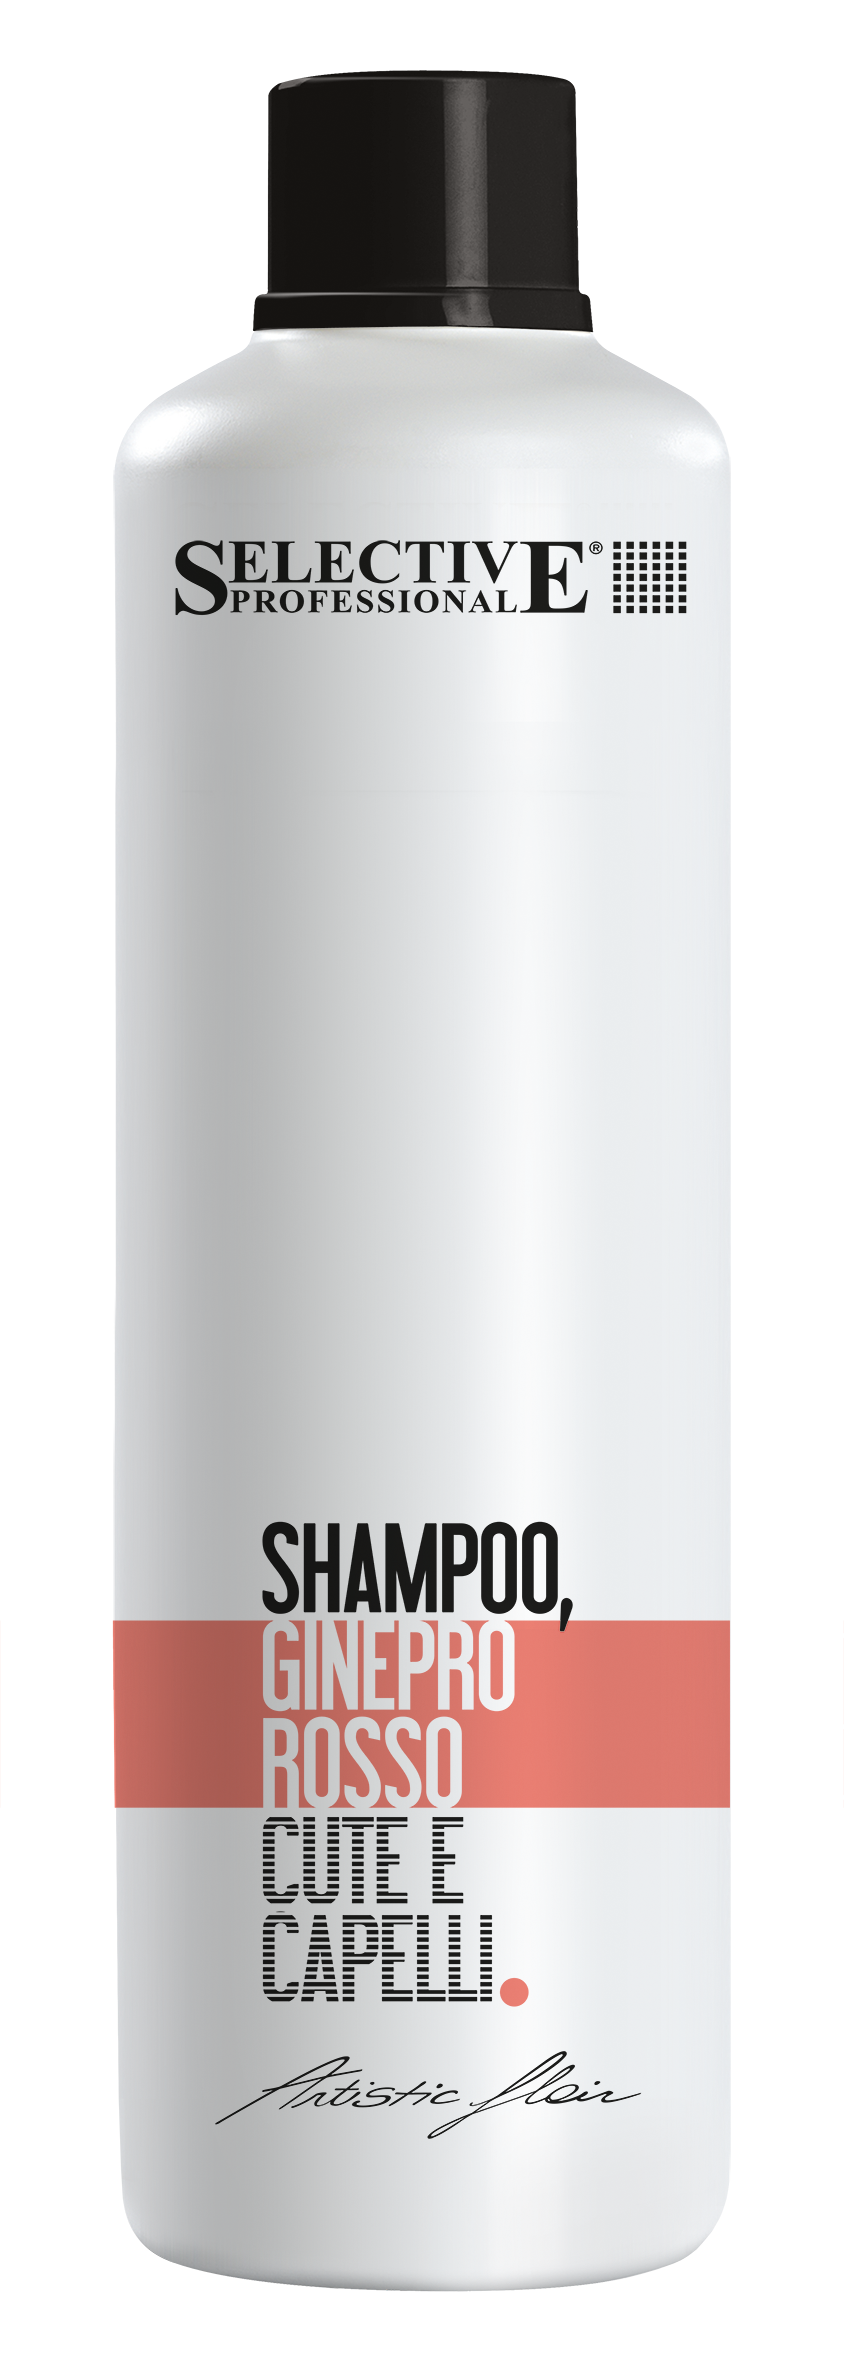 Шампуни для волос:  SELECTIVE PROFESSIONAL -  Шампунь Можжевельник многофункциональный GINEPRO ROSSO  (1000 мл)